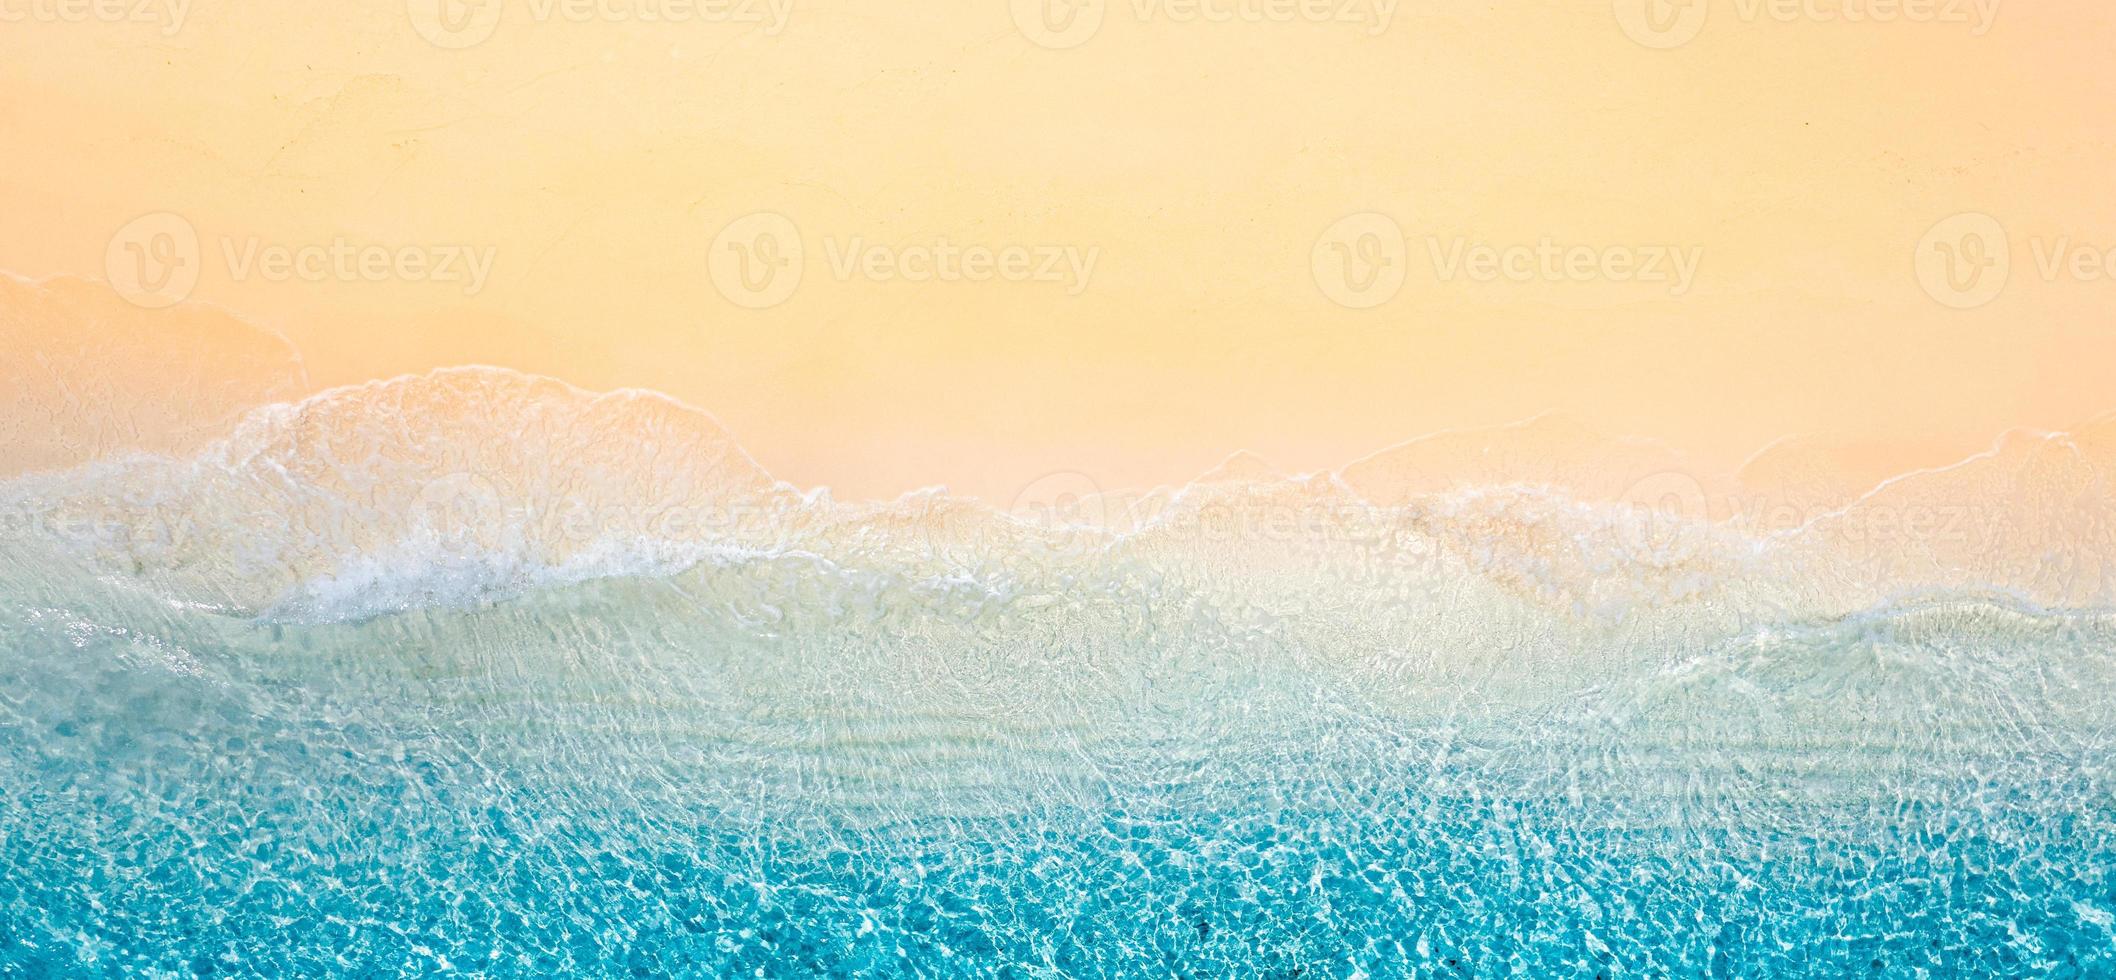 relaxante cena de praia aérea, banner de modelo de férias de férias de verão. ondas surfam com incrível lagoa azul do oceano, beira-mar, litoral. vista superior do drone aéreo perfeito. panorama de praia brilhante, à beira-mar foto